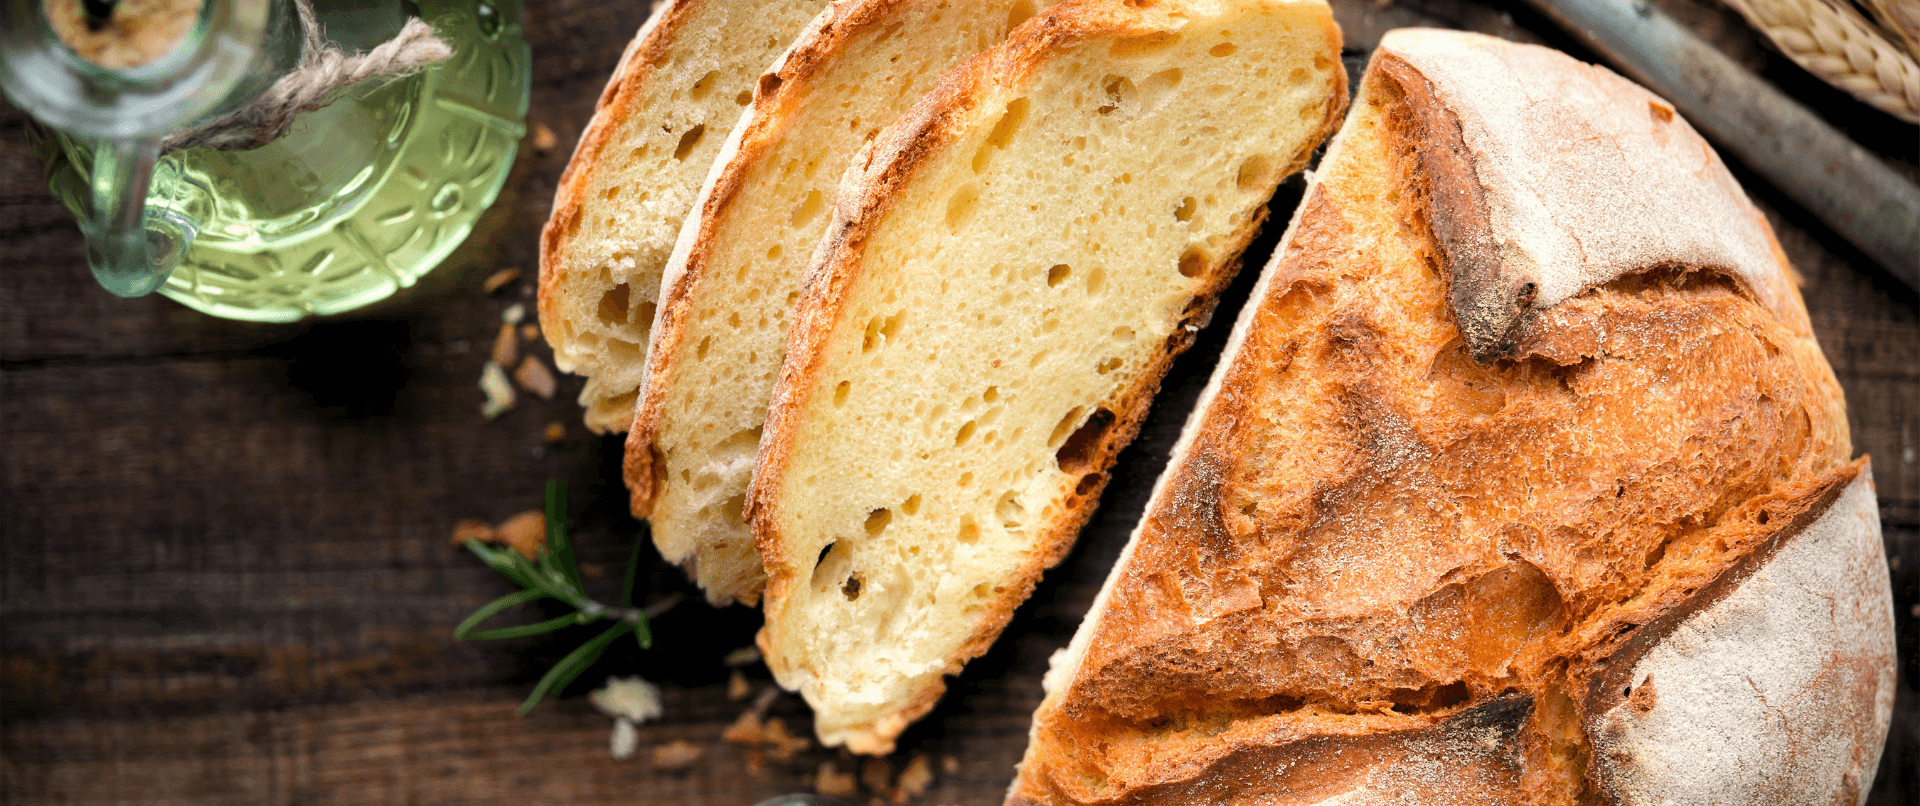 Altes Brot verwerten – Wie wird’s gemacht?